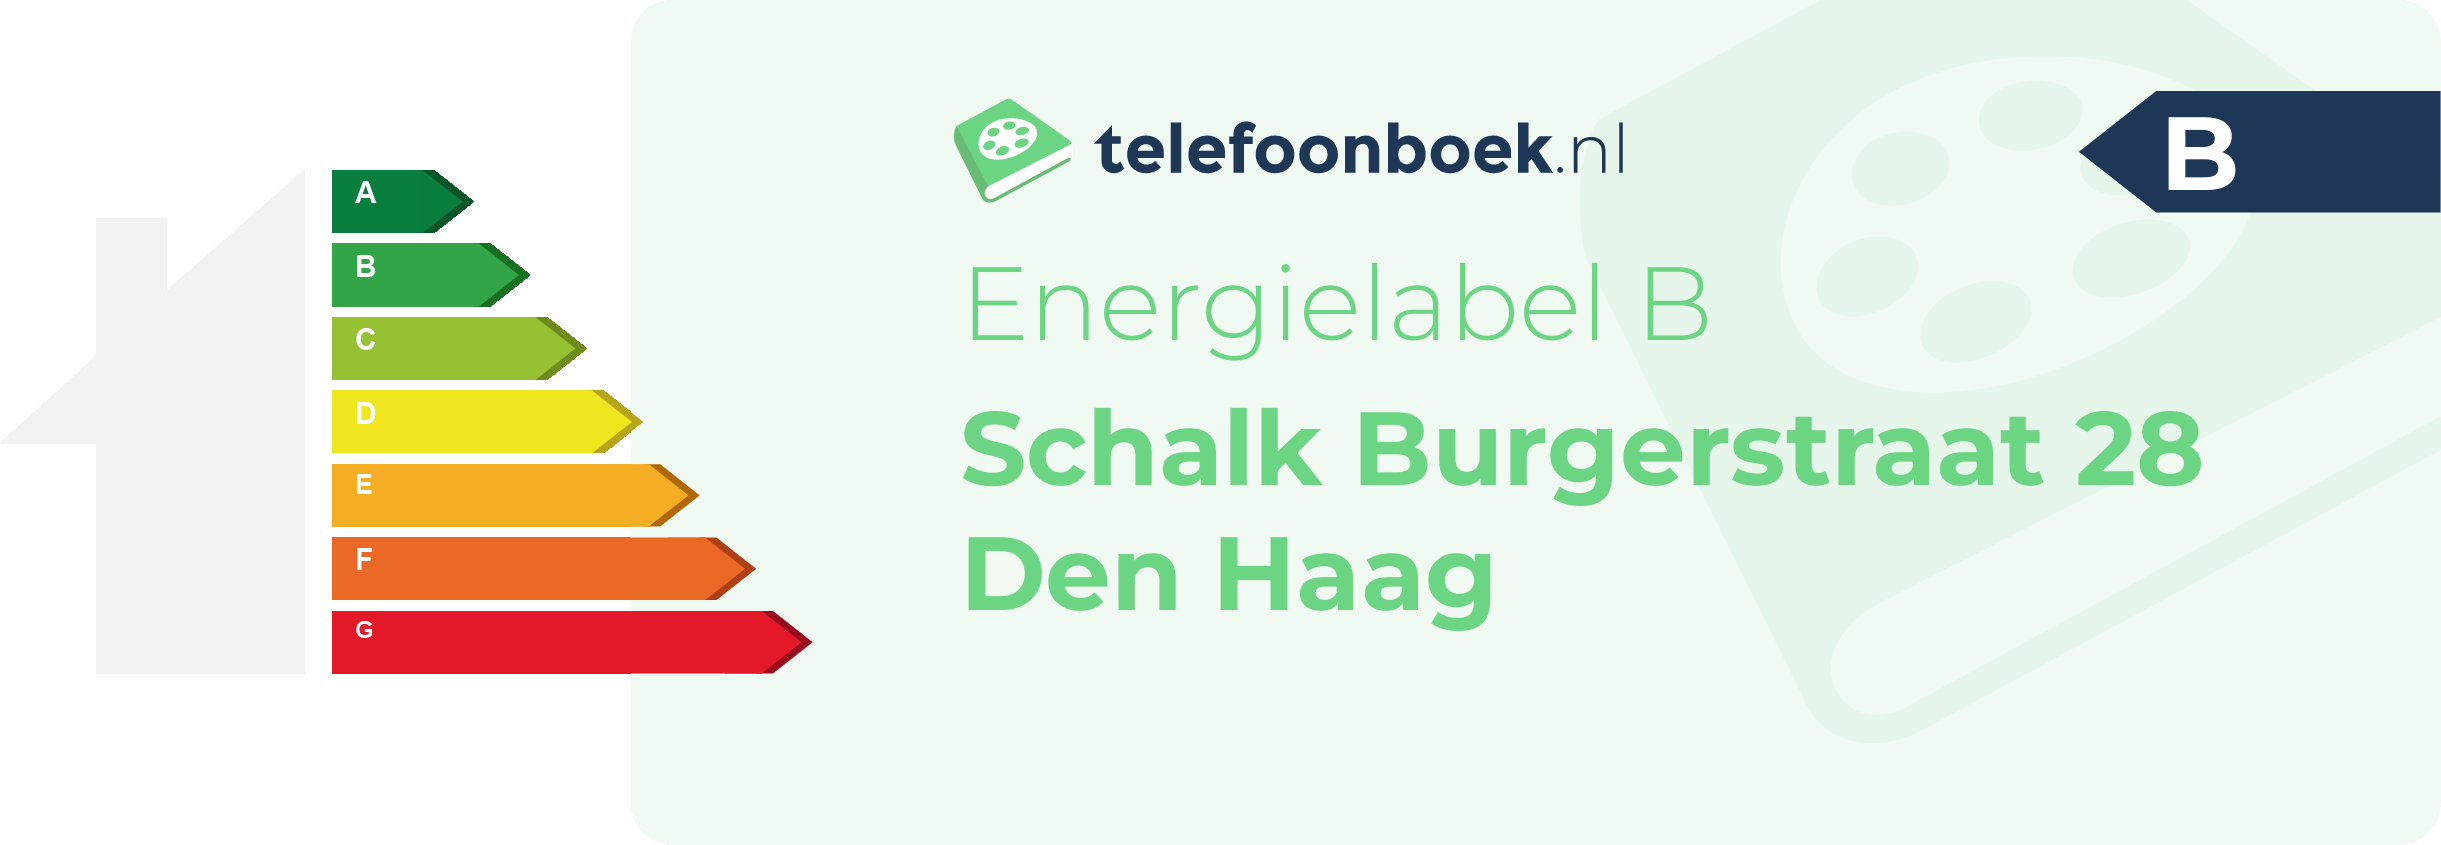 Energielabel Schalk Burgerstraat 28 Den Haag